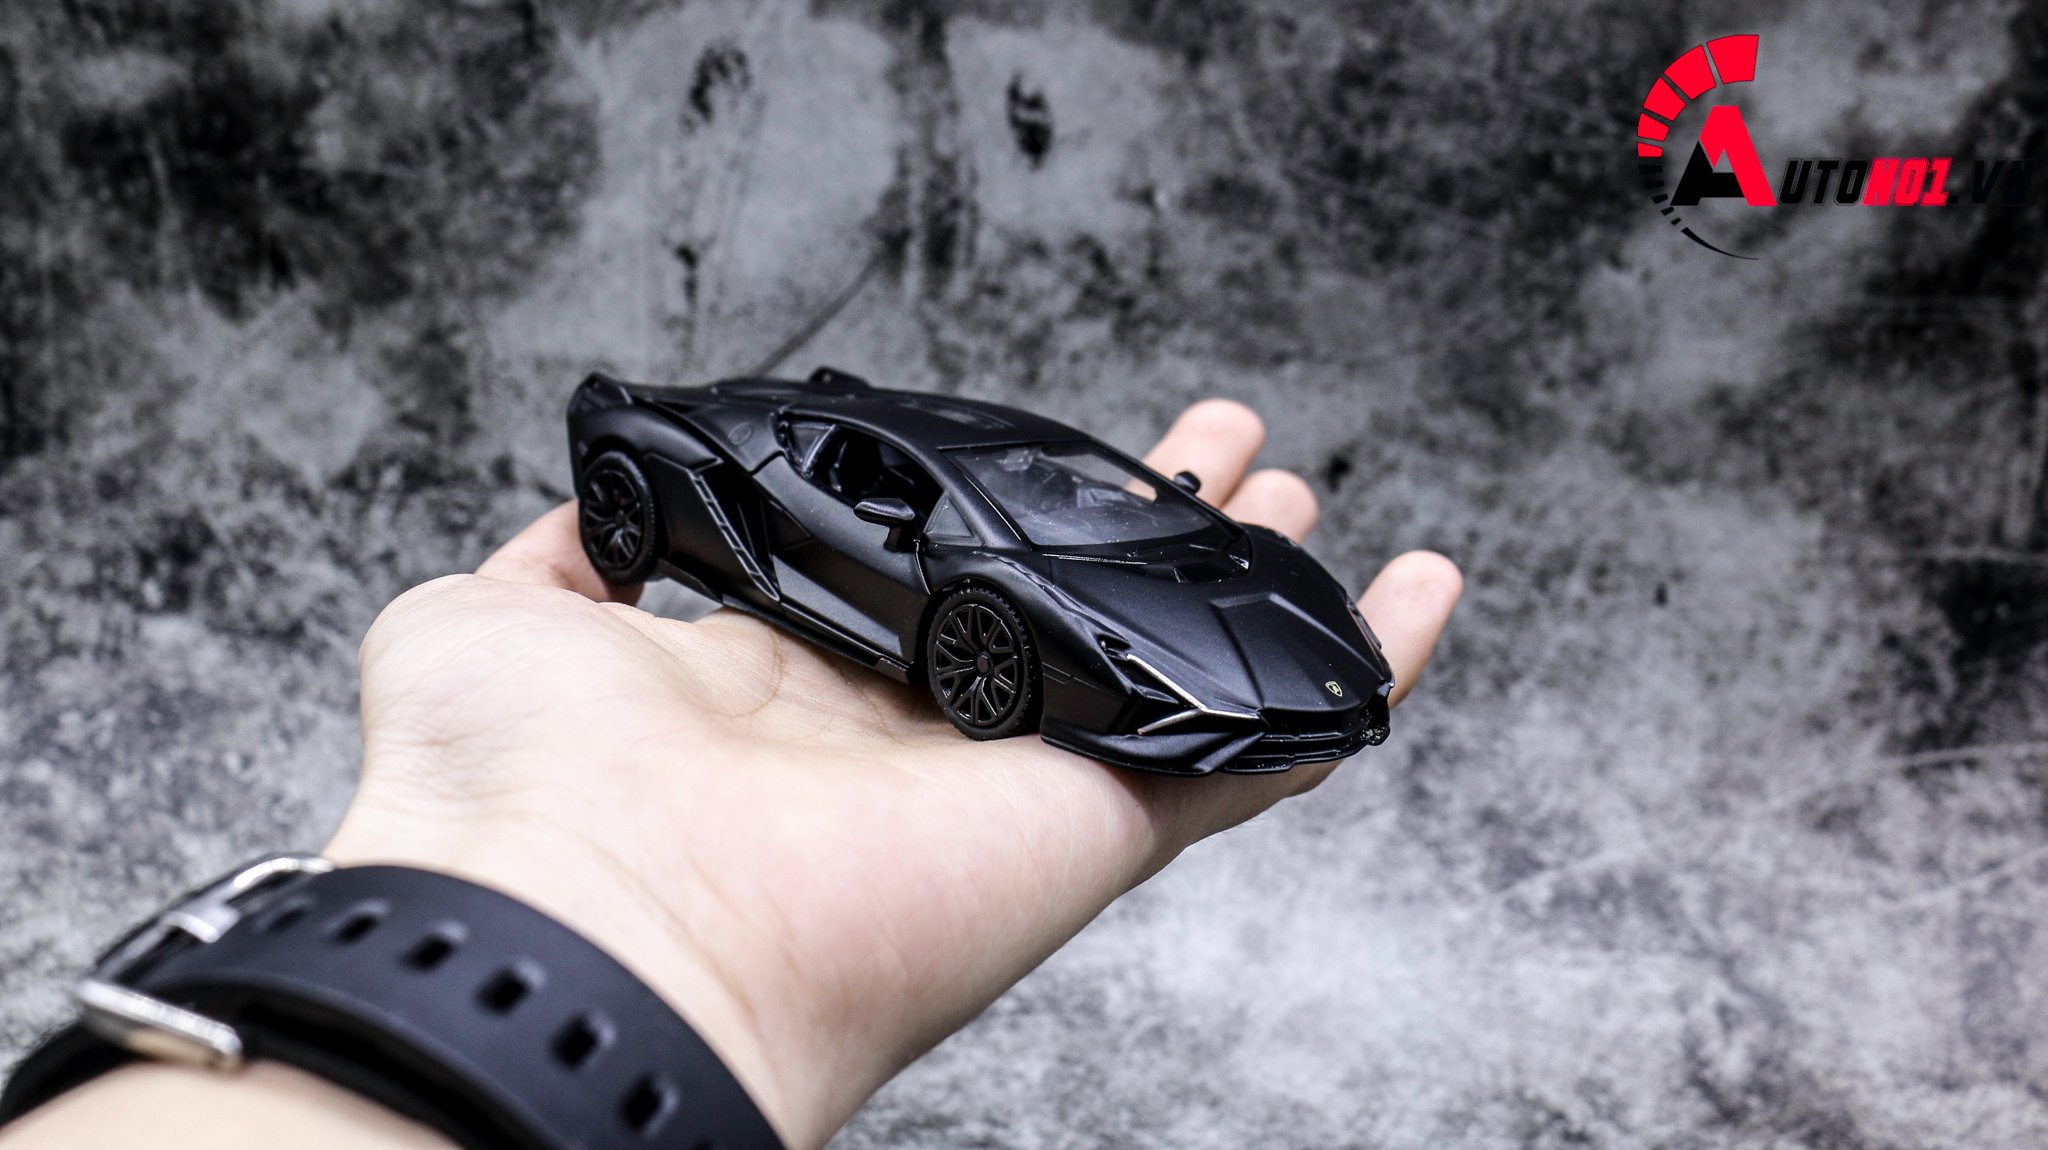  Mô hình xe Lamborghini Sian Black 1:36 Scale Model 7593 